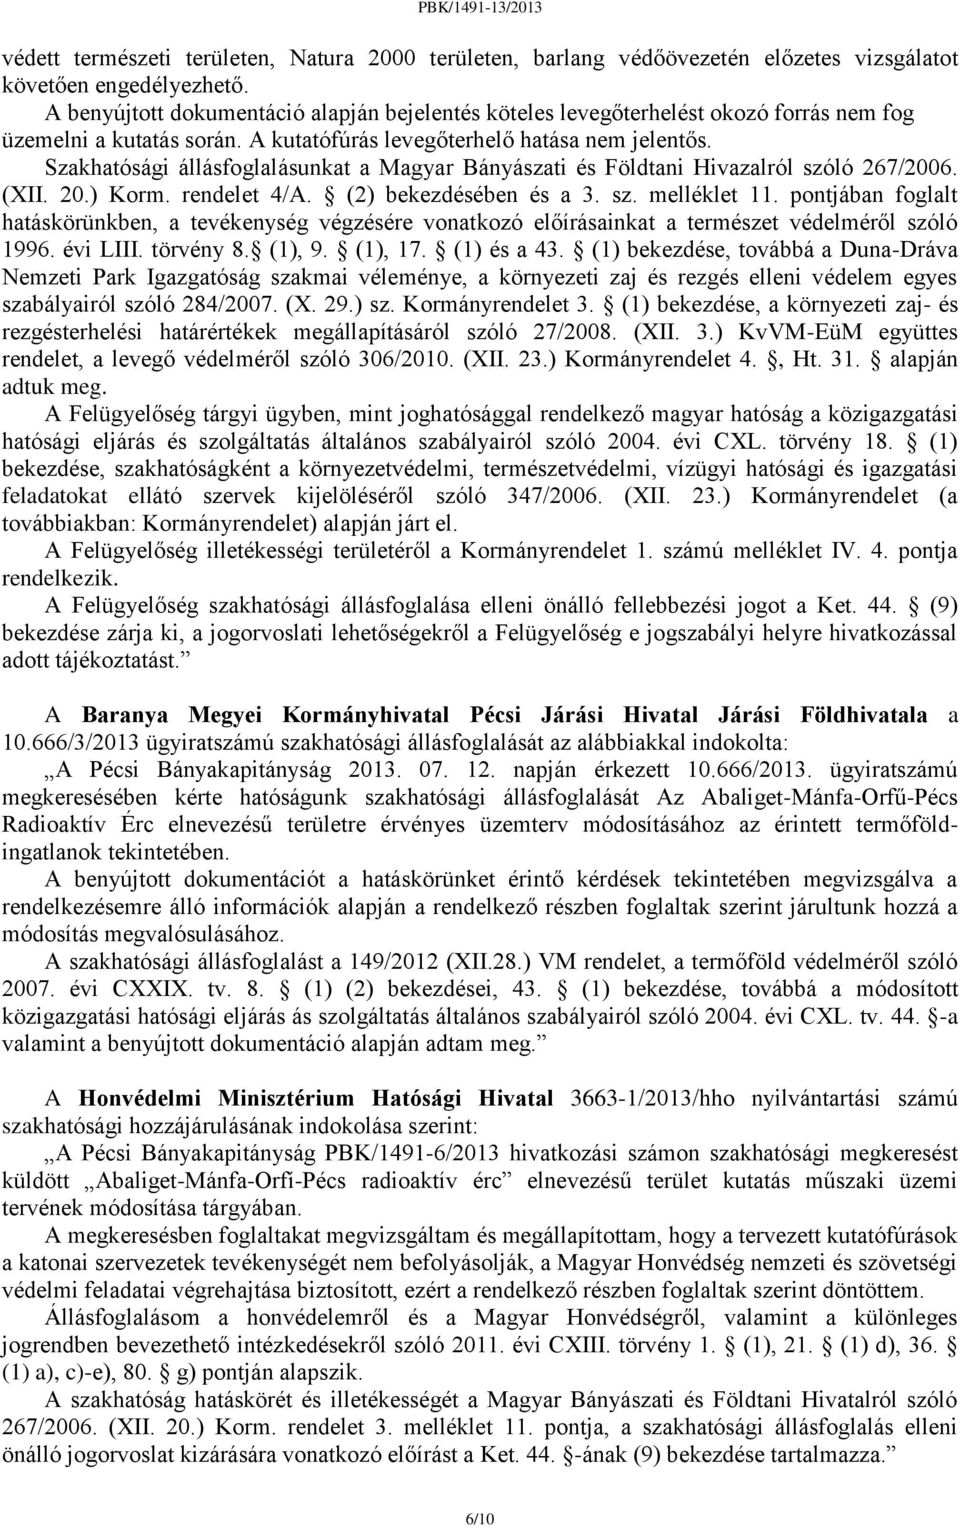 Szakhatósági állásfoglalásunkat a Magyar Bányászati és Földtani Hivazalról szóló 267/2006. (XII. 20.) Korm. rendelet 4/A. (2) bekezdésében és a 3. sz. melléklet 11.